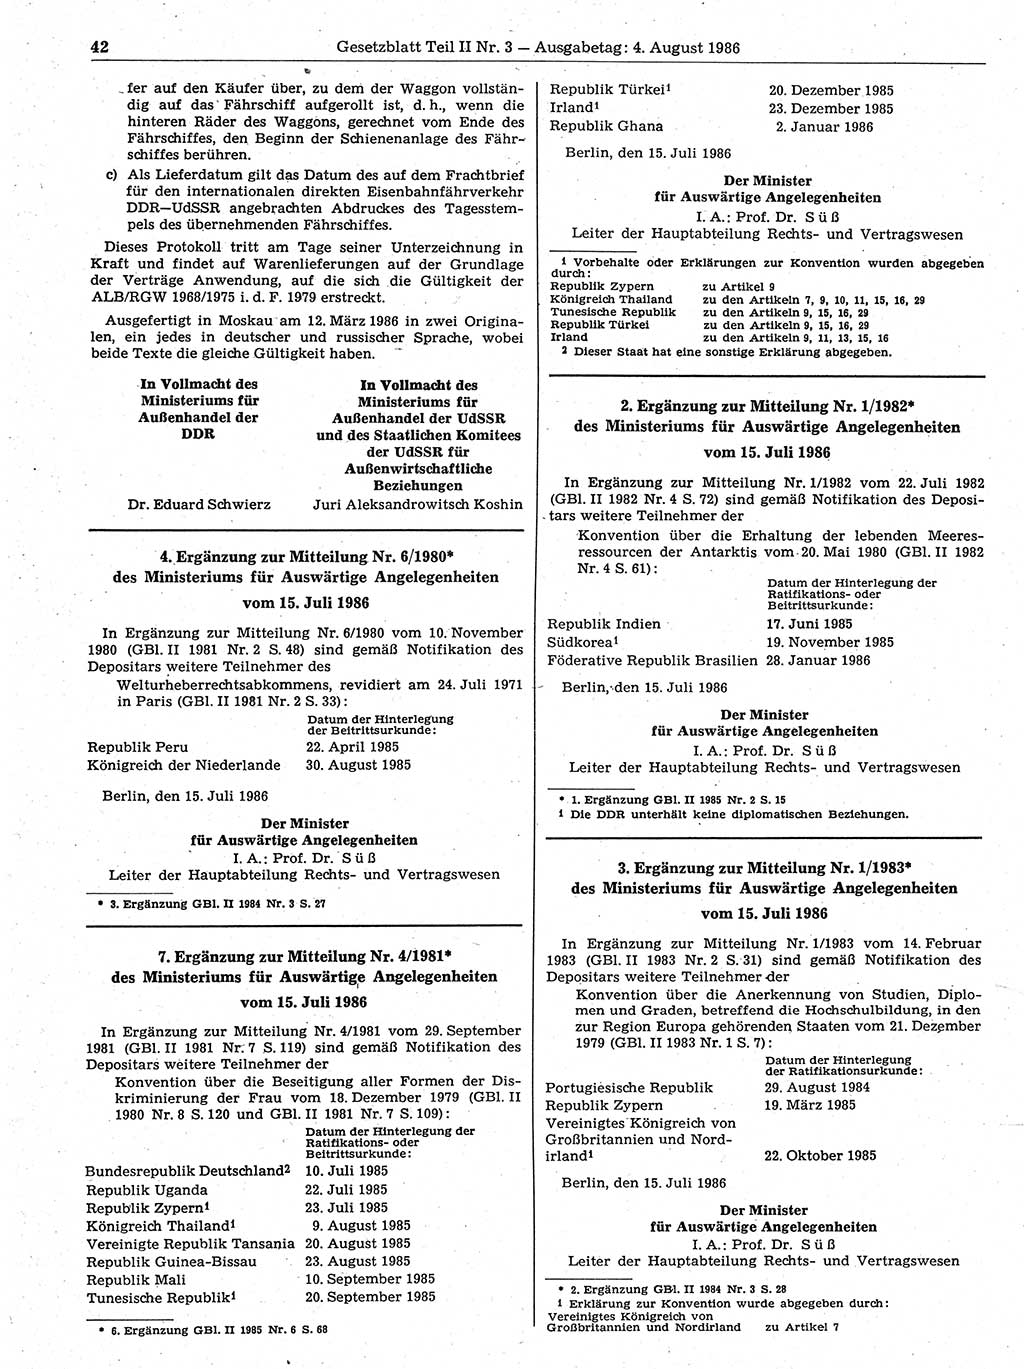 Gesetzblatt (GBl.) der Deutschen Demokratischen Republik (DDR) Teil ⅠⅠ 1986, Seite 42 (GBl. DDR ⅠⅠ 1986, S. 42)